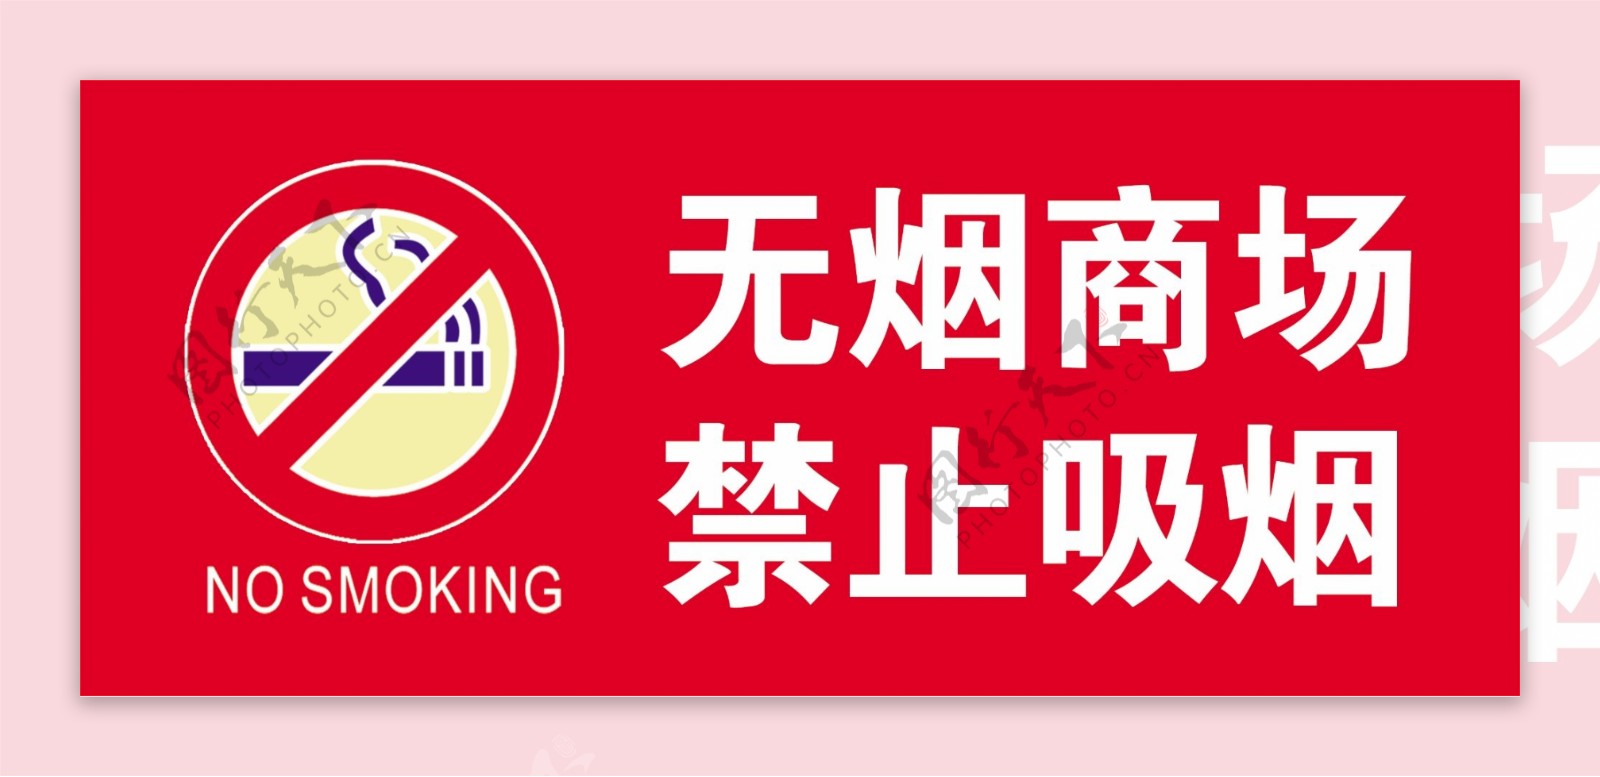 无烟商场禁止吸烟